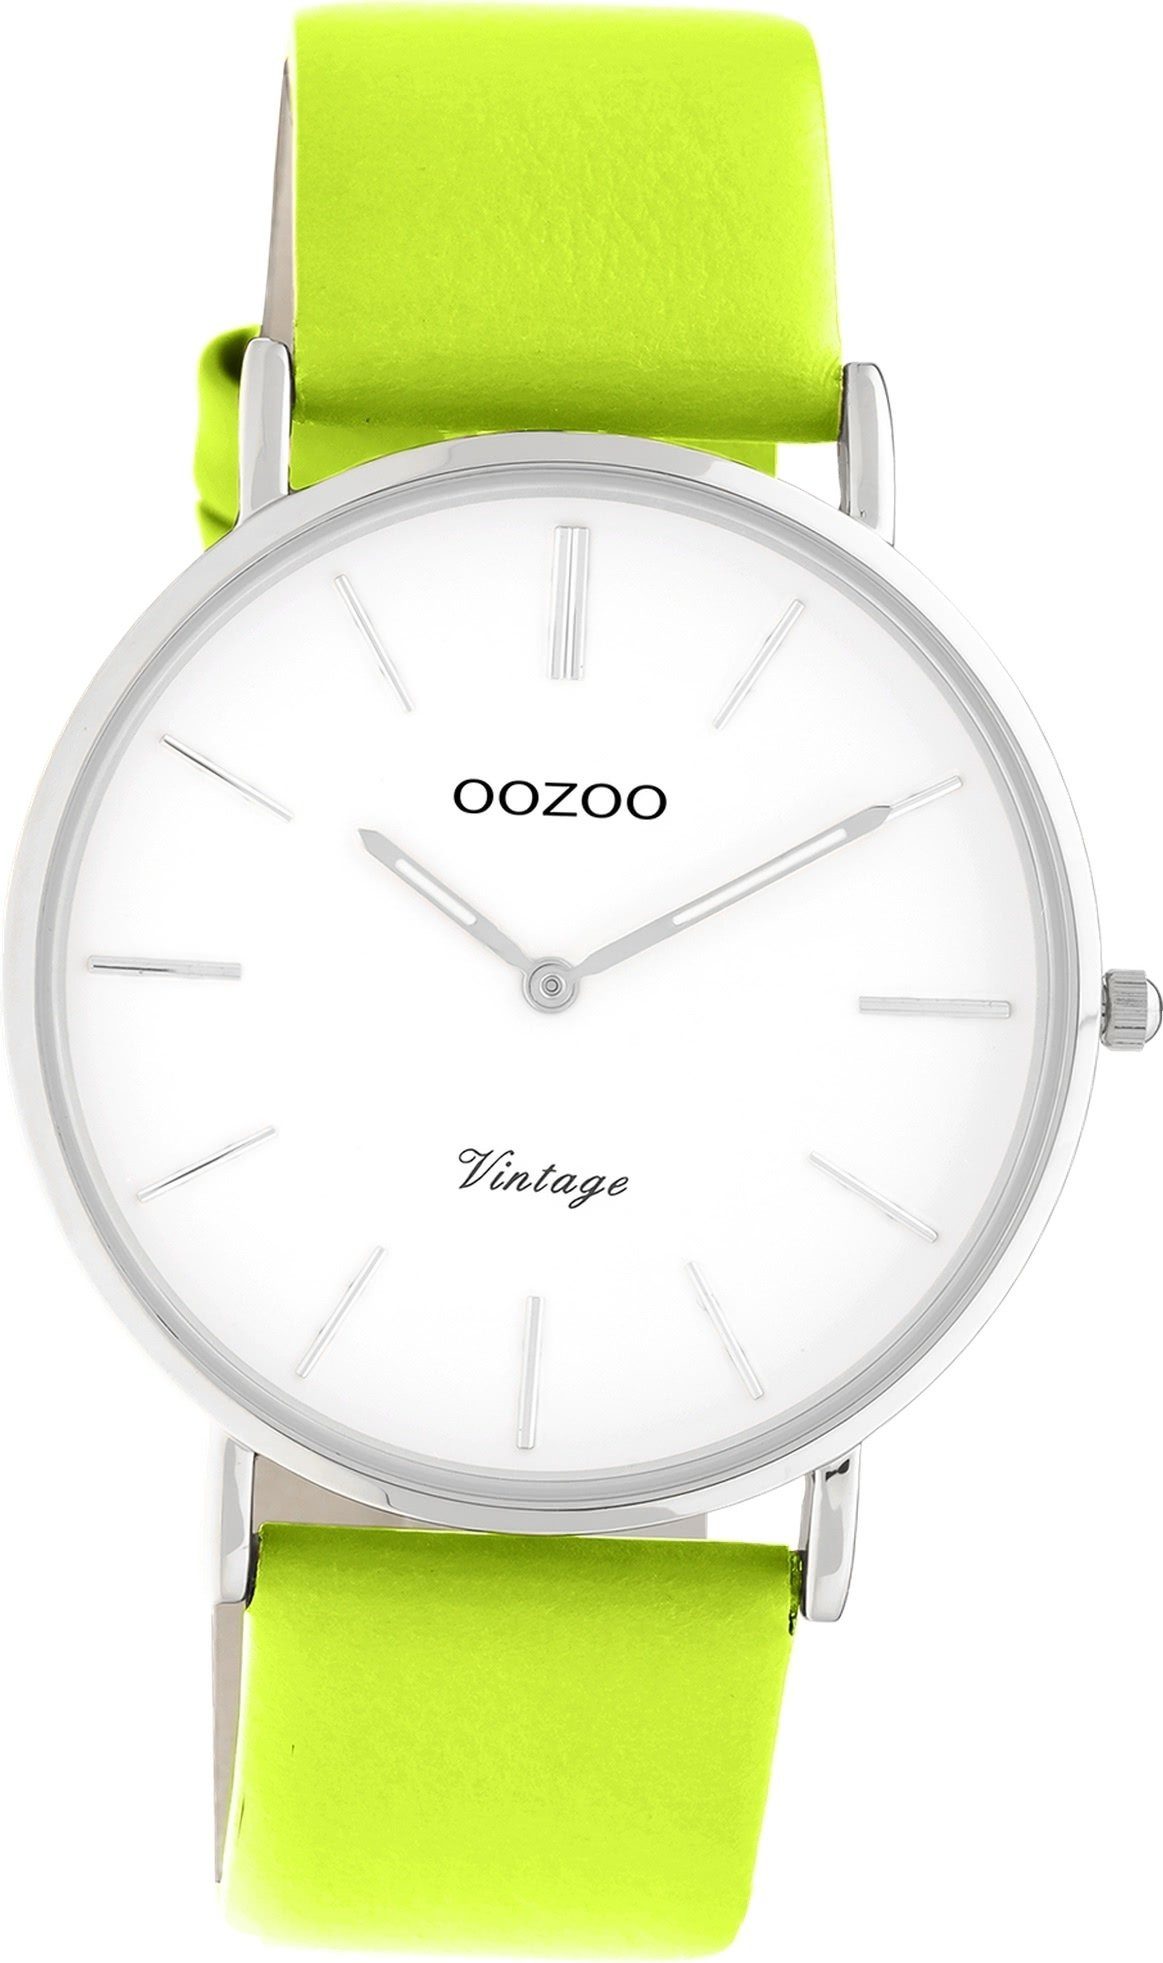 OOZOO Quarzuhr Lederarmband Series, rundes gelbgrün, (ca. Gehäuse, Damen Armbanduhr groß 40mm) Damenuhr Vintage Oozoo